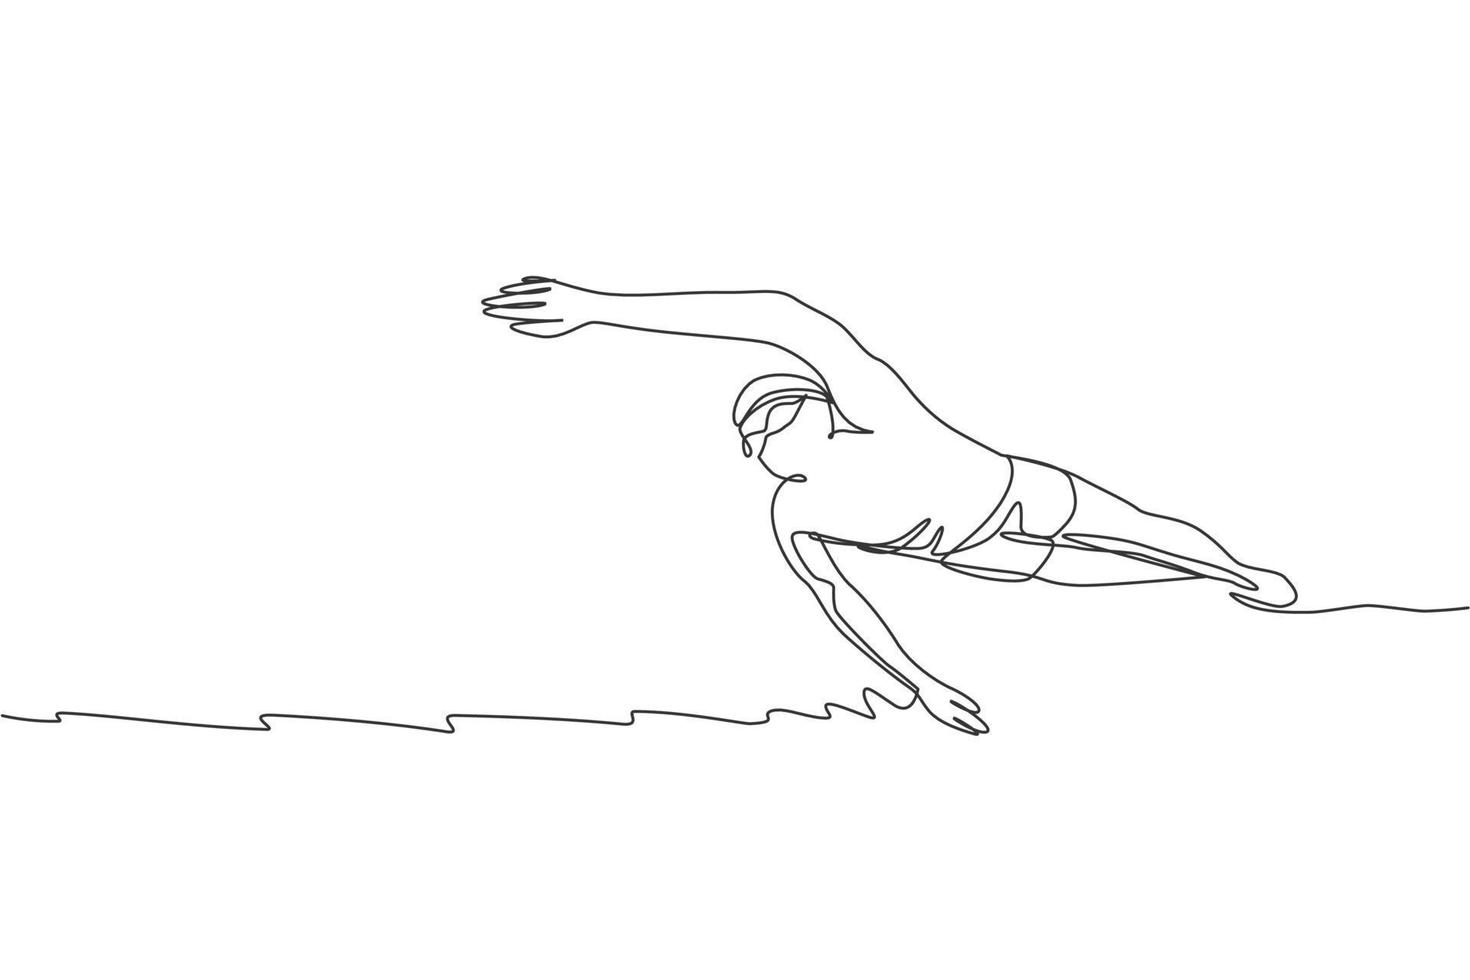 un dibujo de línea continua de un joven nadador profesional musculoso nadando en un centro deportivo. concepto de ejercicio cardiovascular de deporte saludable y fitness. Ilustración de vector de diseño de dibujo de línea única dinámica